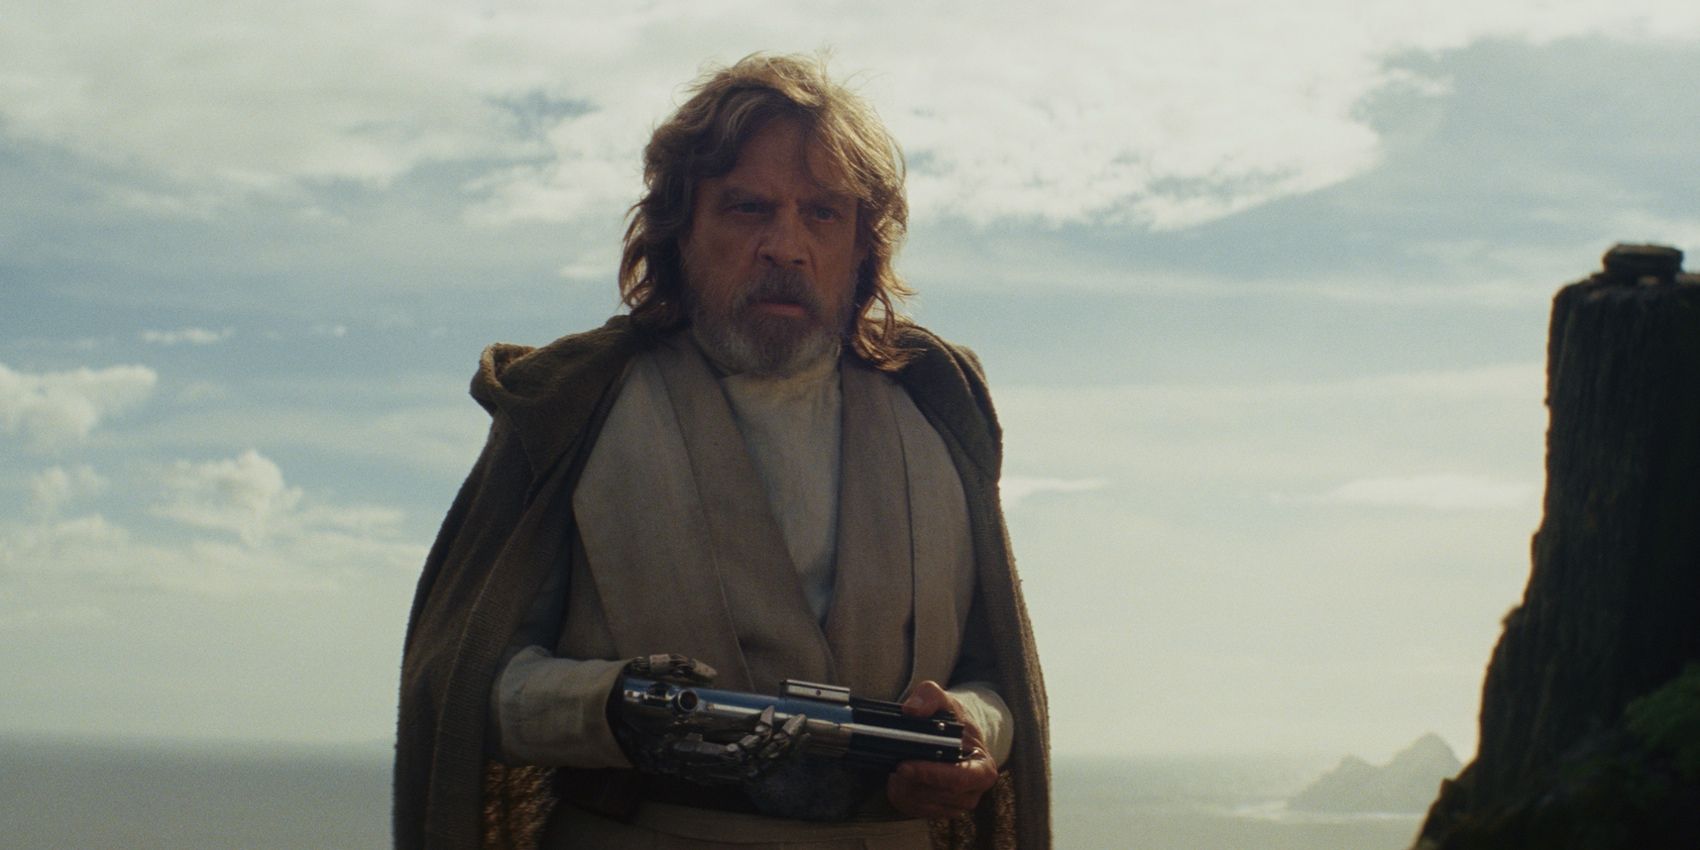 Star Wars 8: Why Luke Still Has His Green Lightsaber